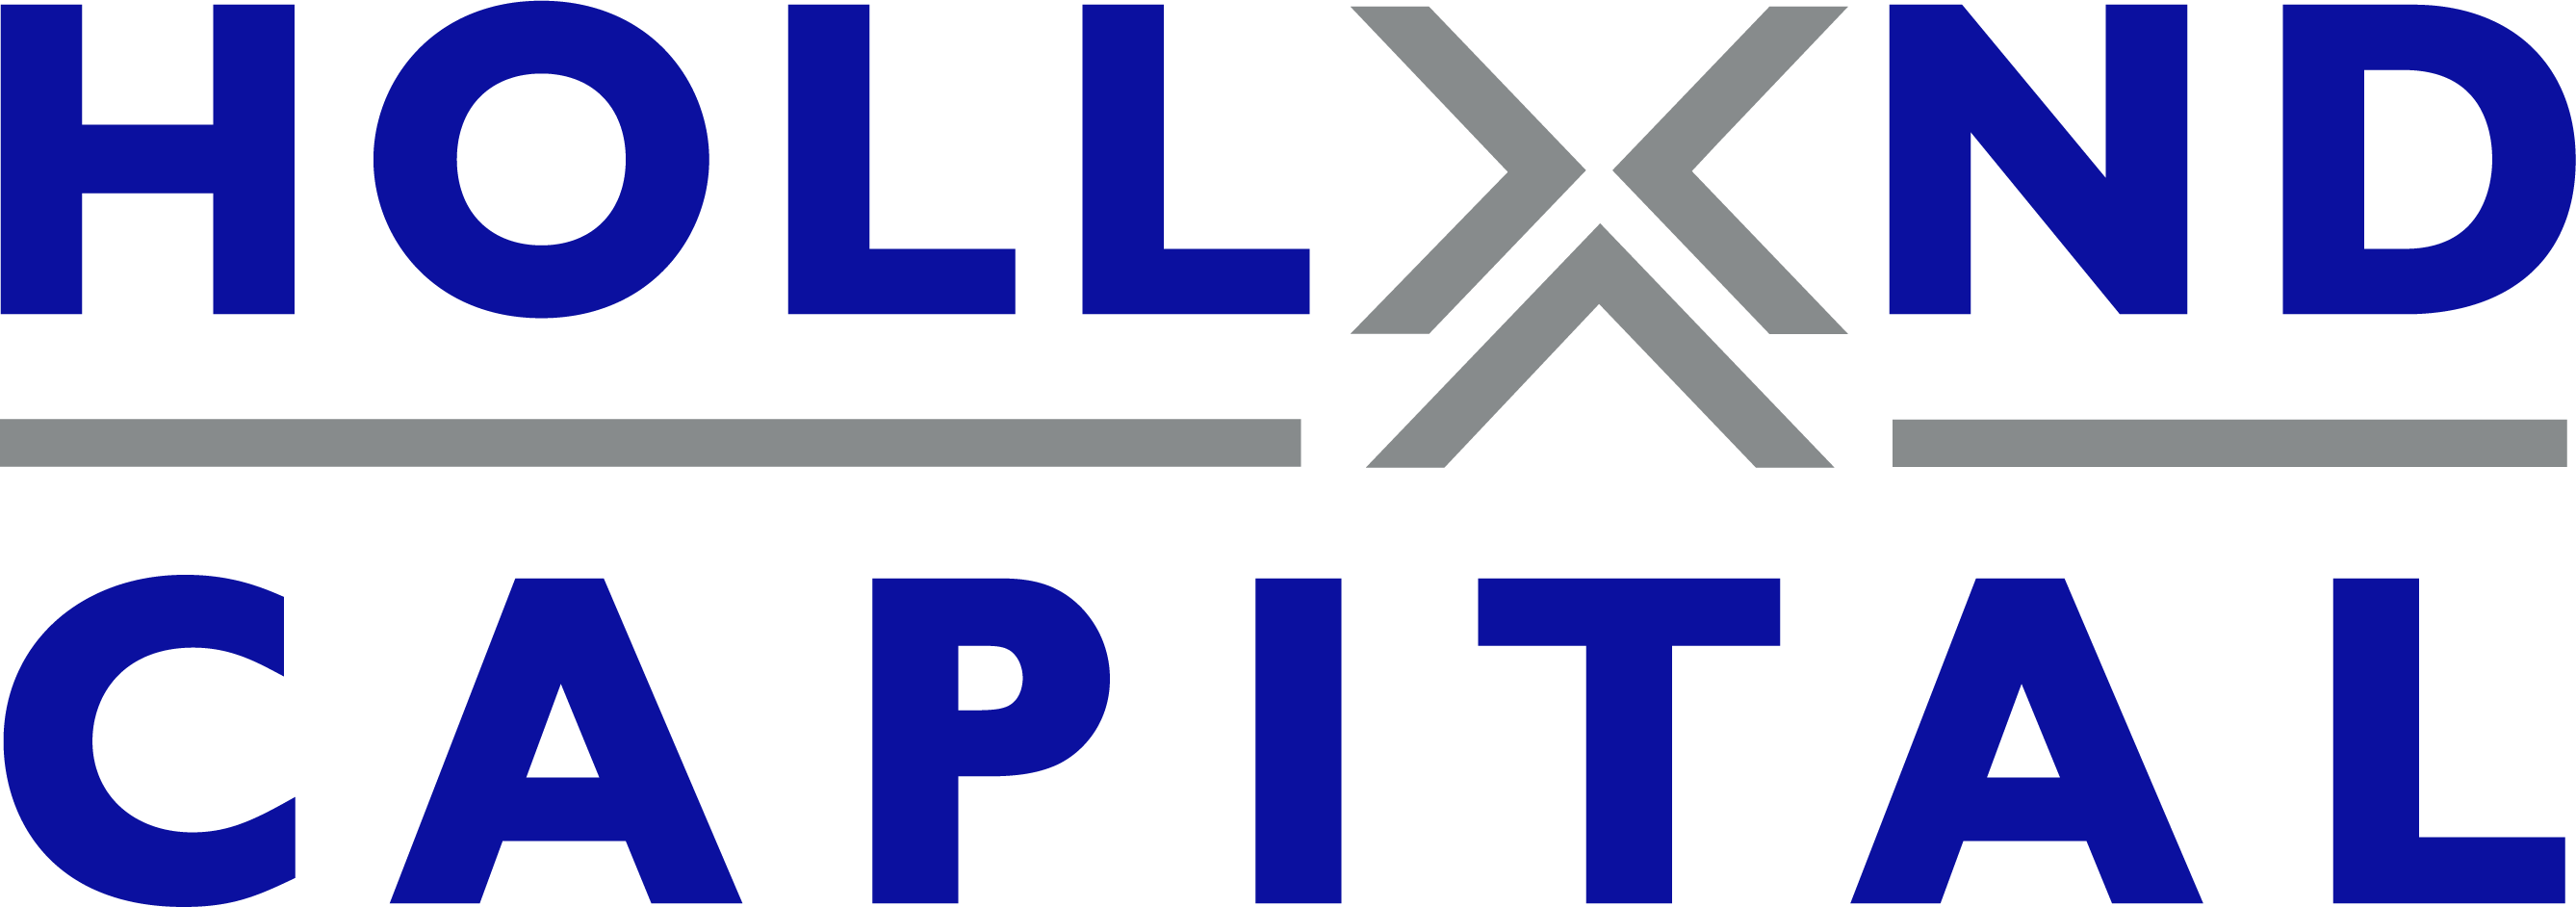 Holland capital logo